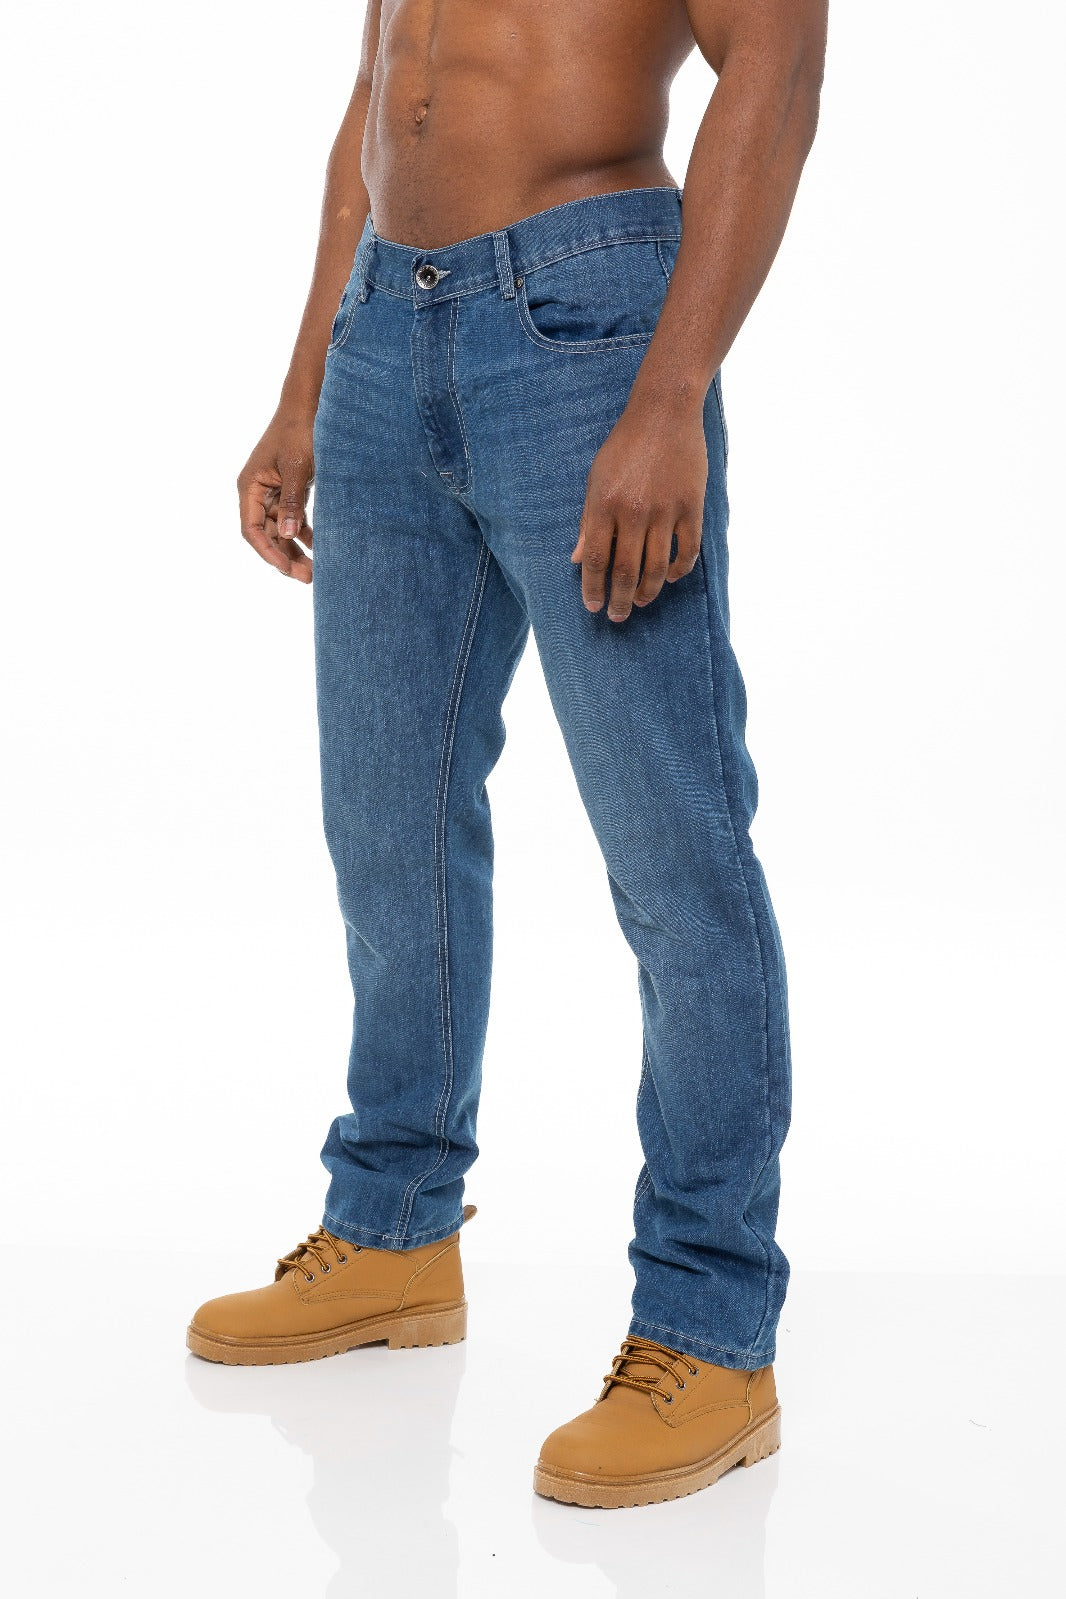 Enzo Mens Jeans Straight Leg Regular Fit Denim Trouser Pants All